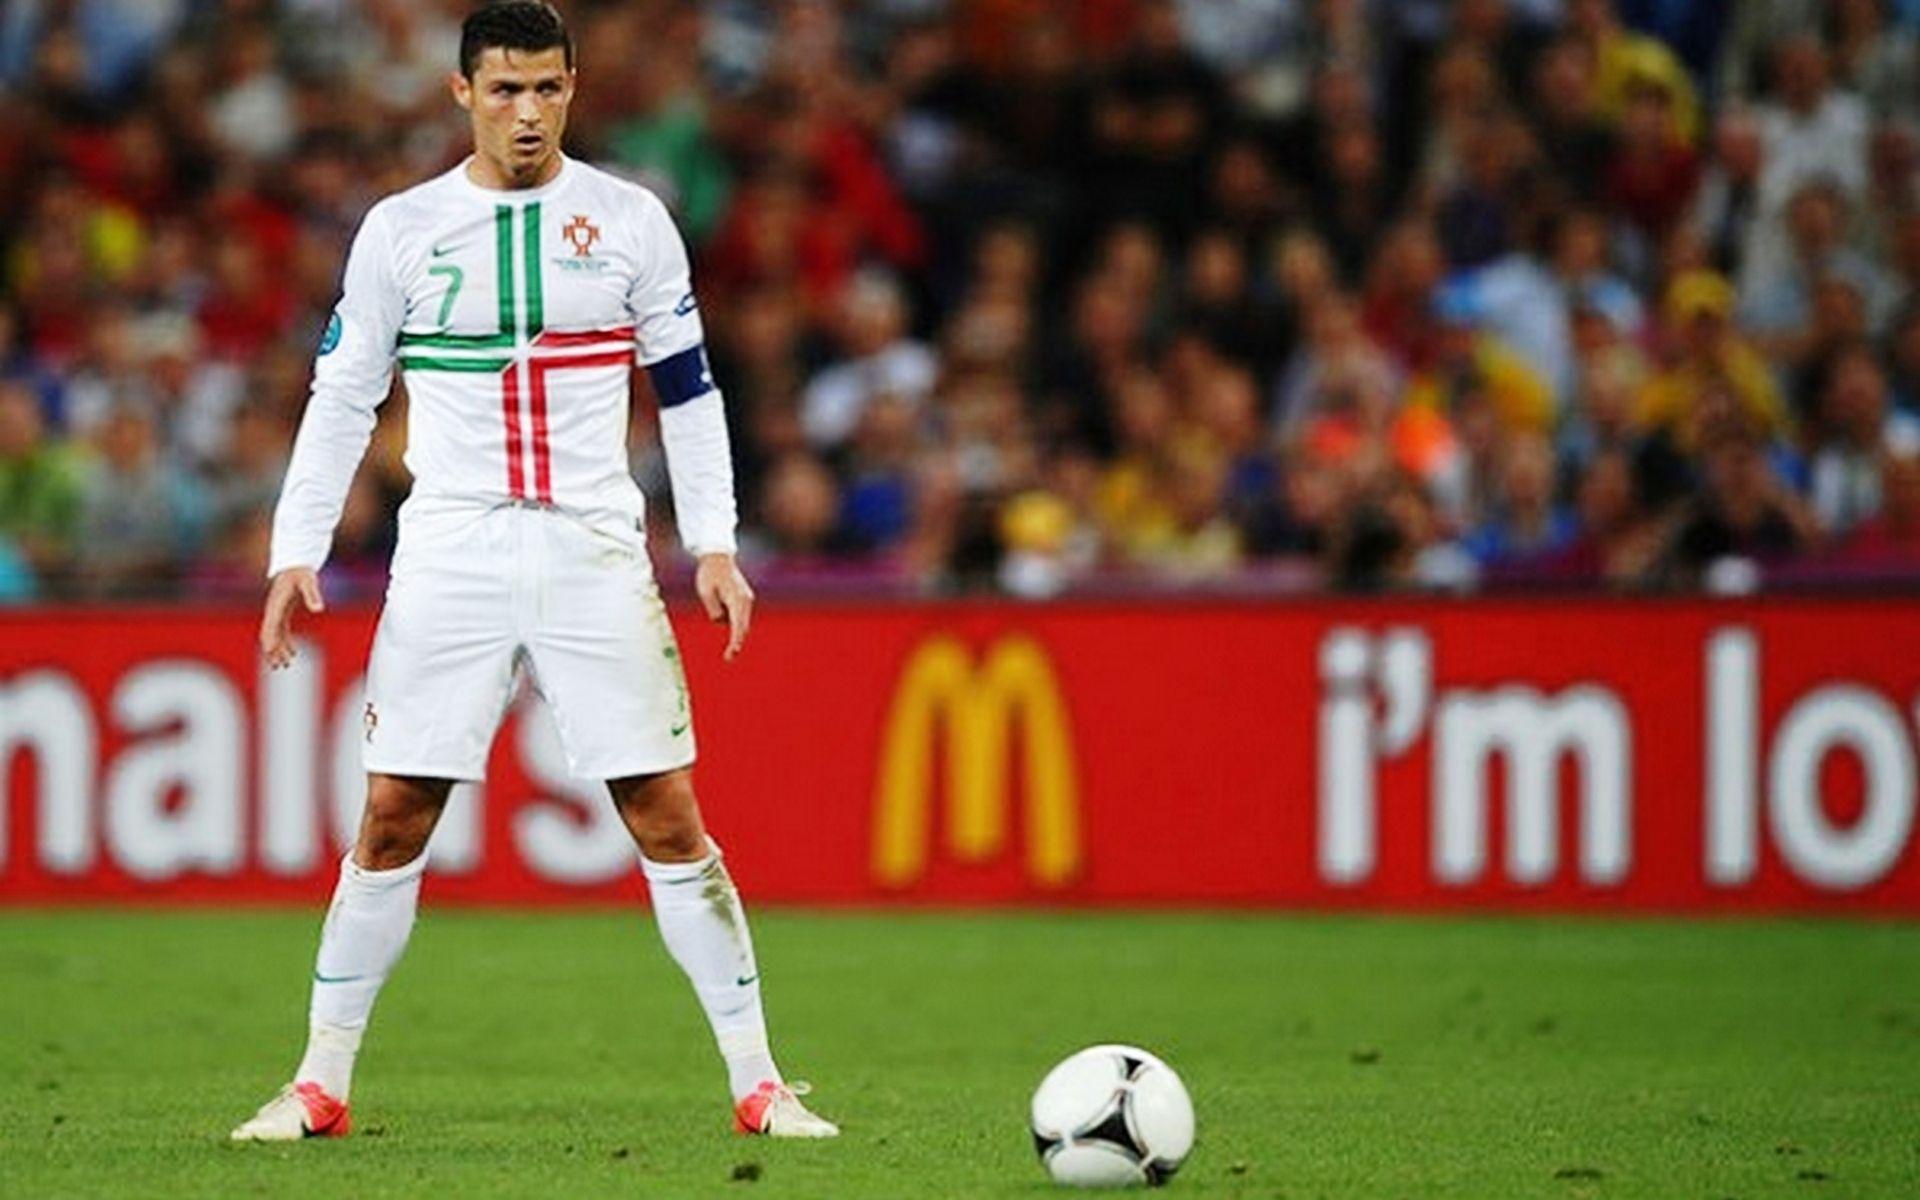 Ronaldo Free Kick Wallpaper Image #P7A .com